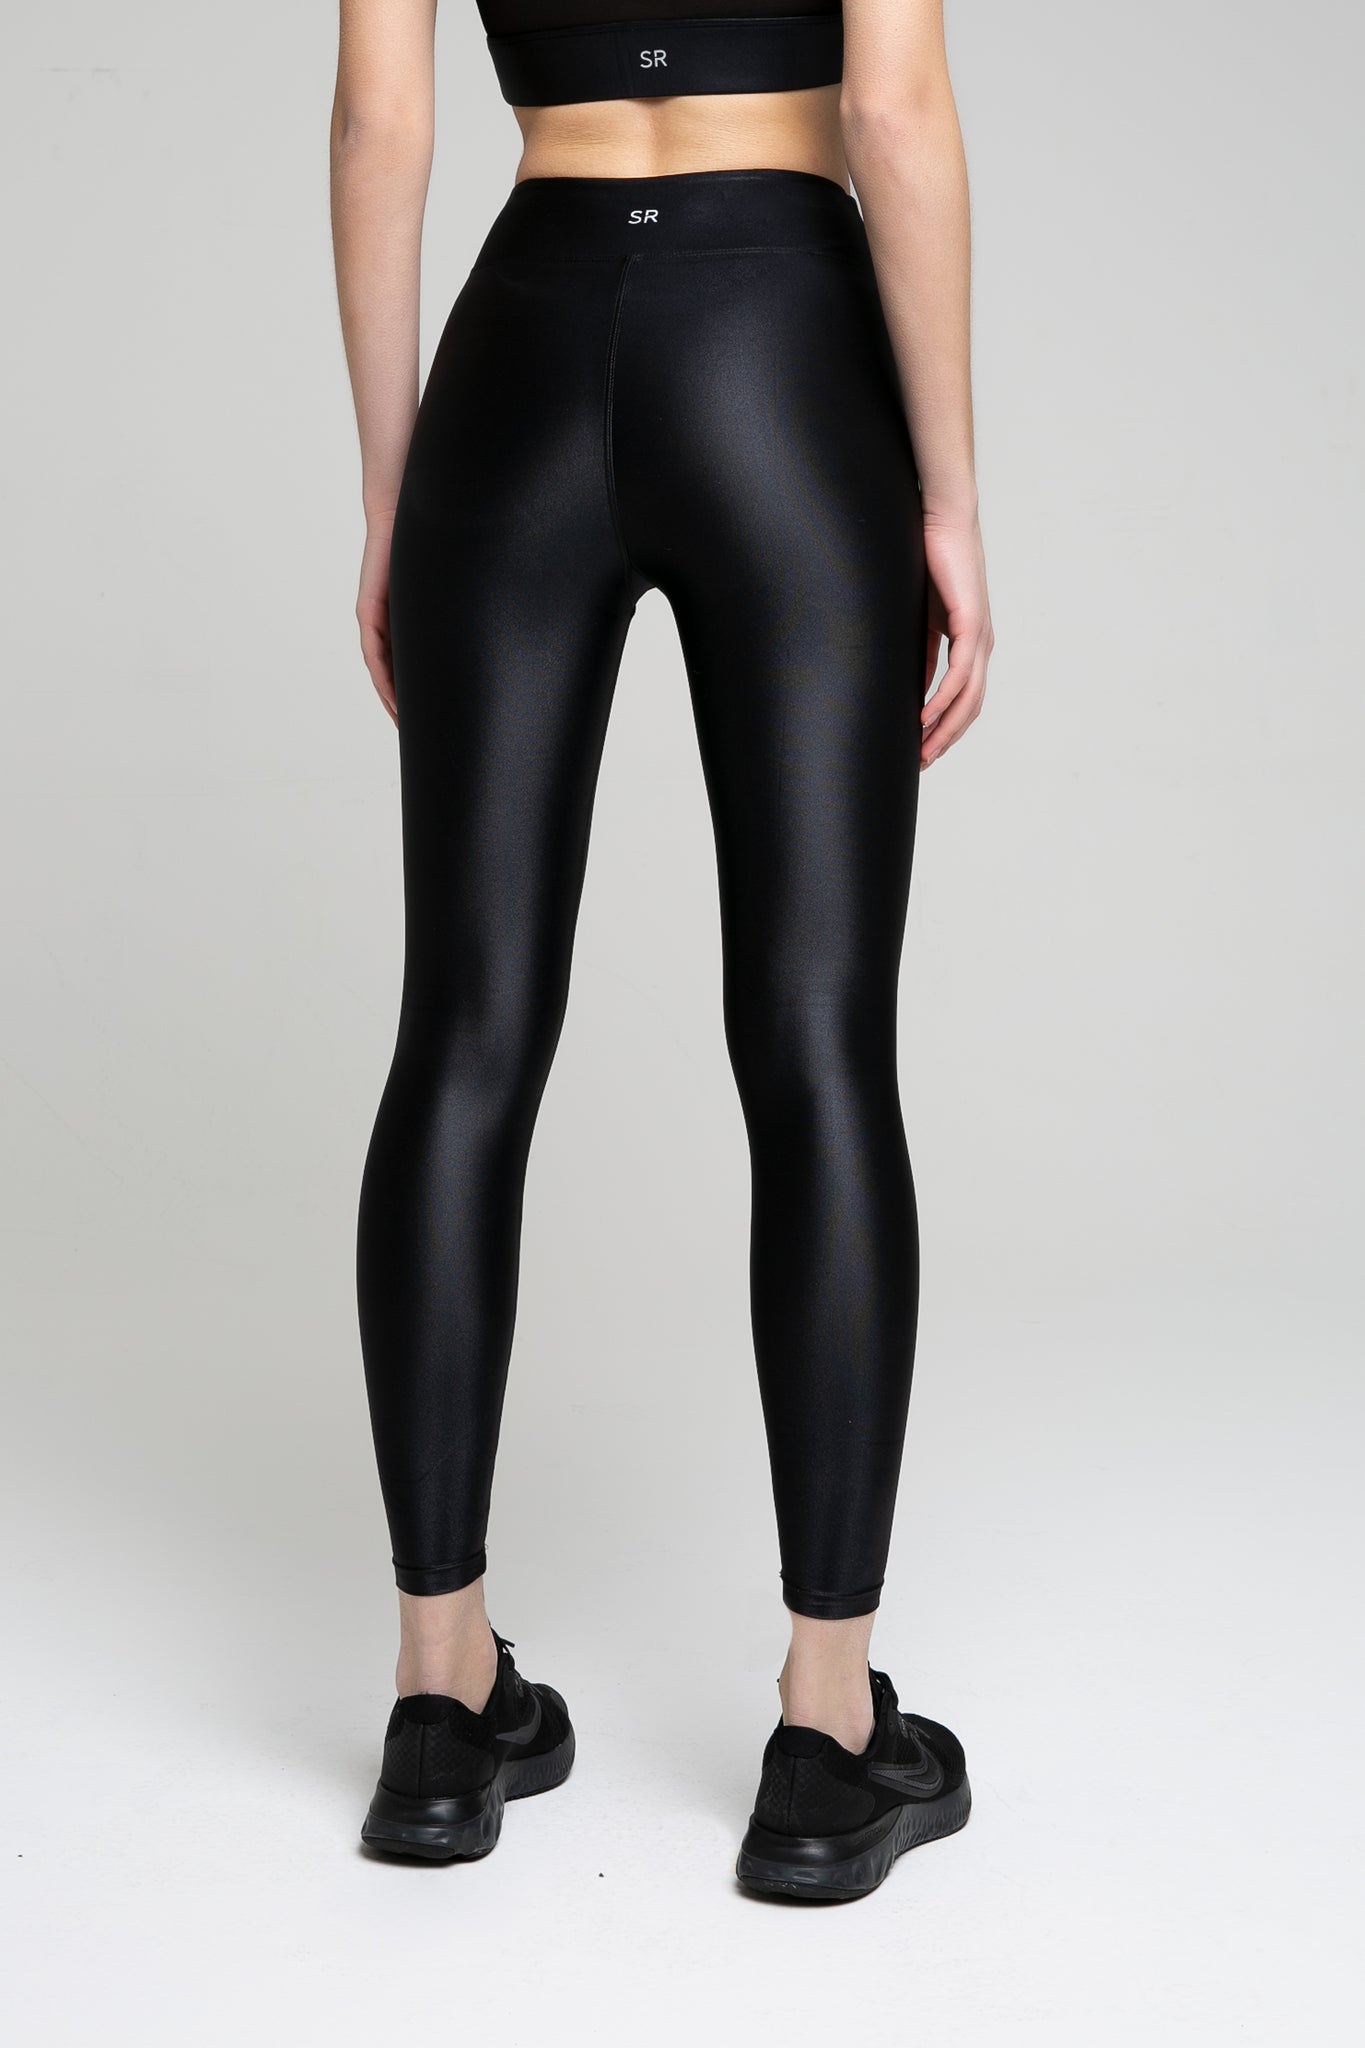 Lucette leggings in shiny black